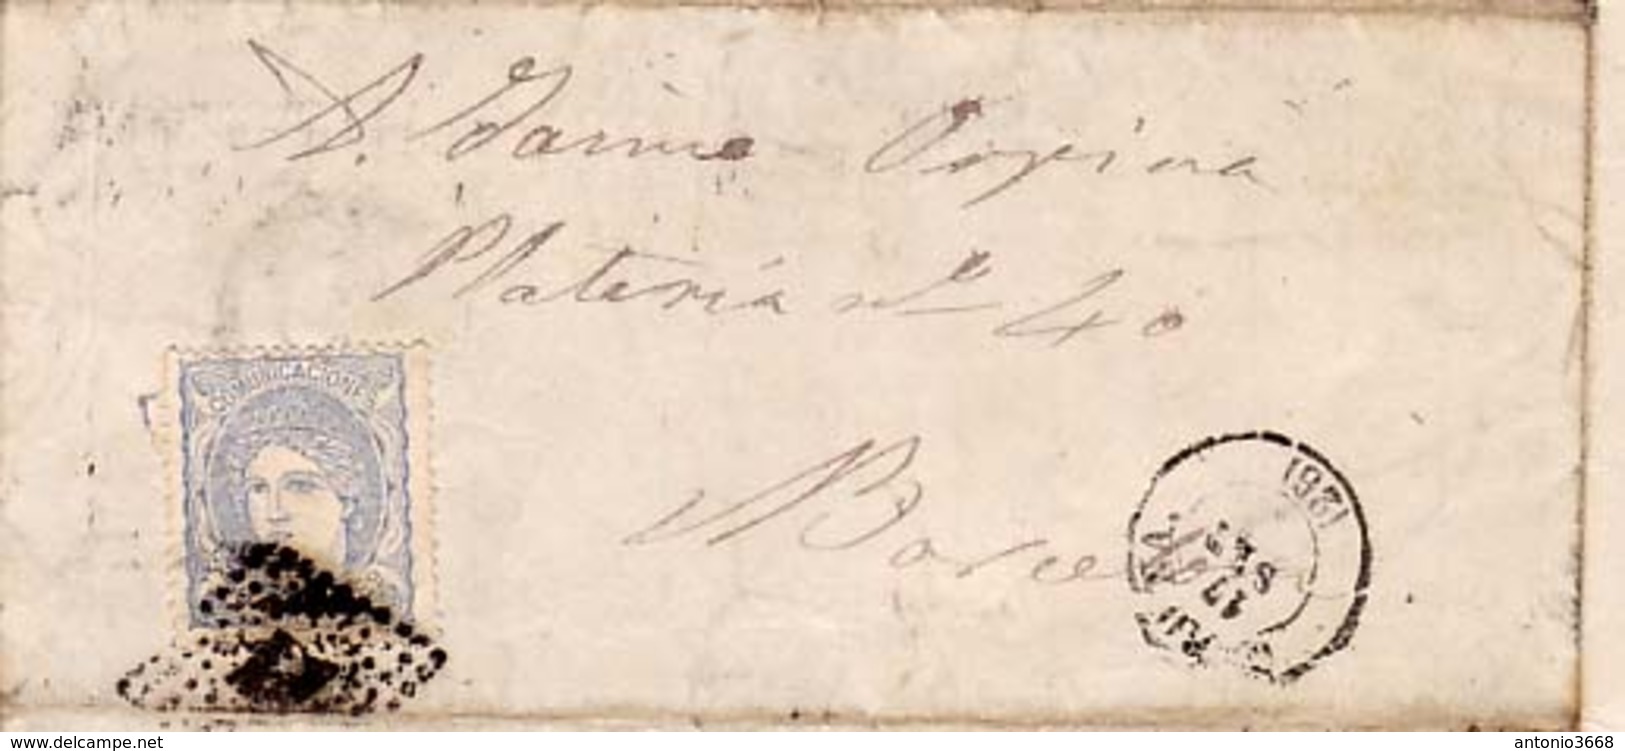 Año 1870 Edifil 107 50m Sellos Efigie Carta  Matasellos Rombo Gerona A Barcelona - Cartas & Documentos